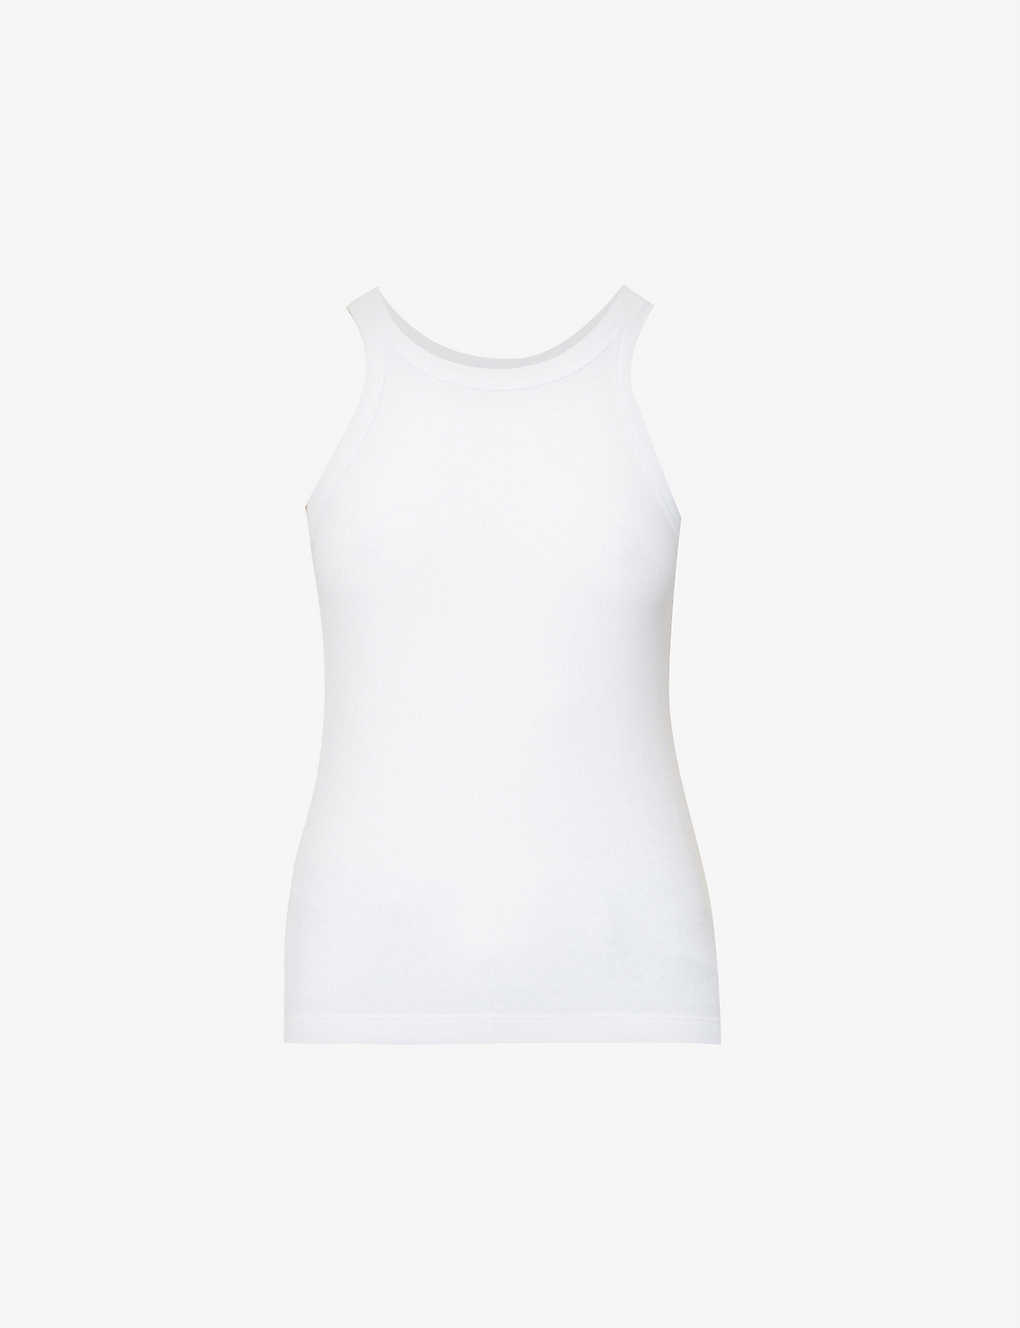 Shop Totême Toteme Women's White Ribbed Organic Cotton-blend Tank Top